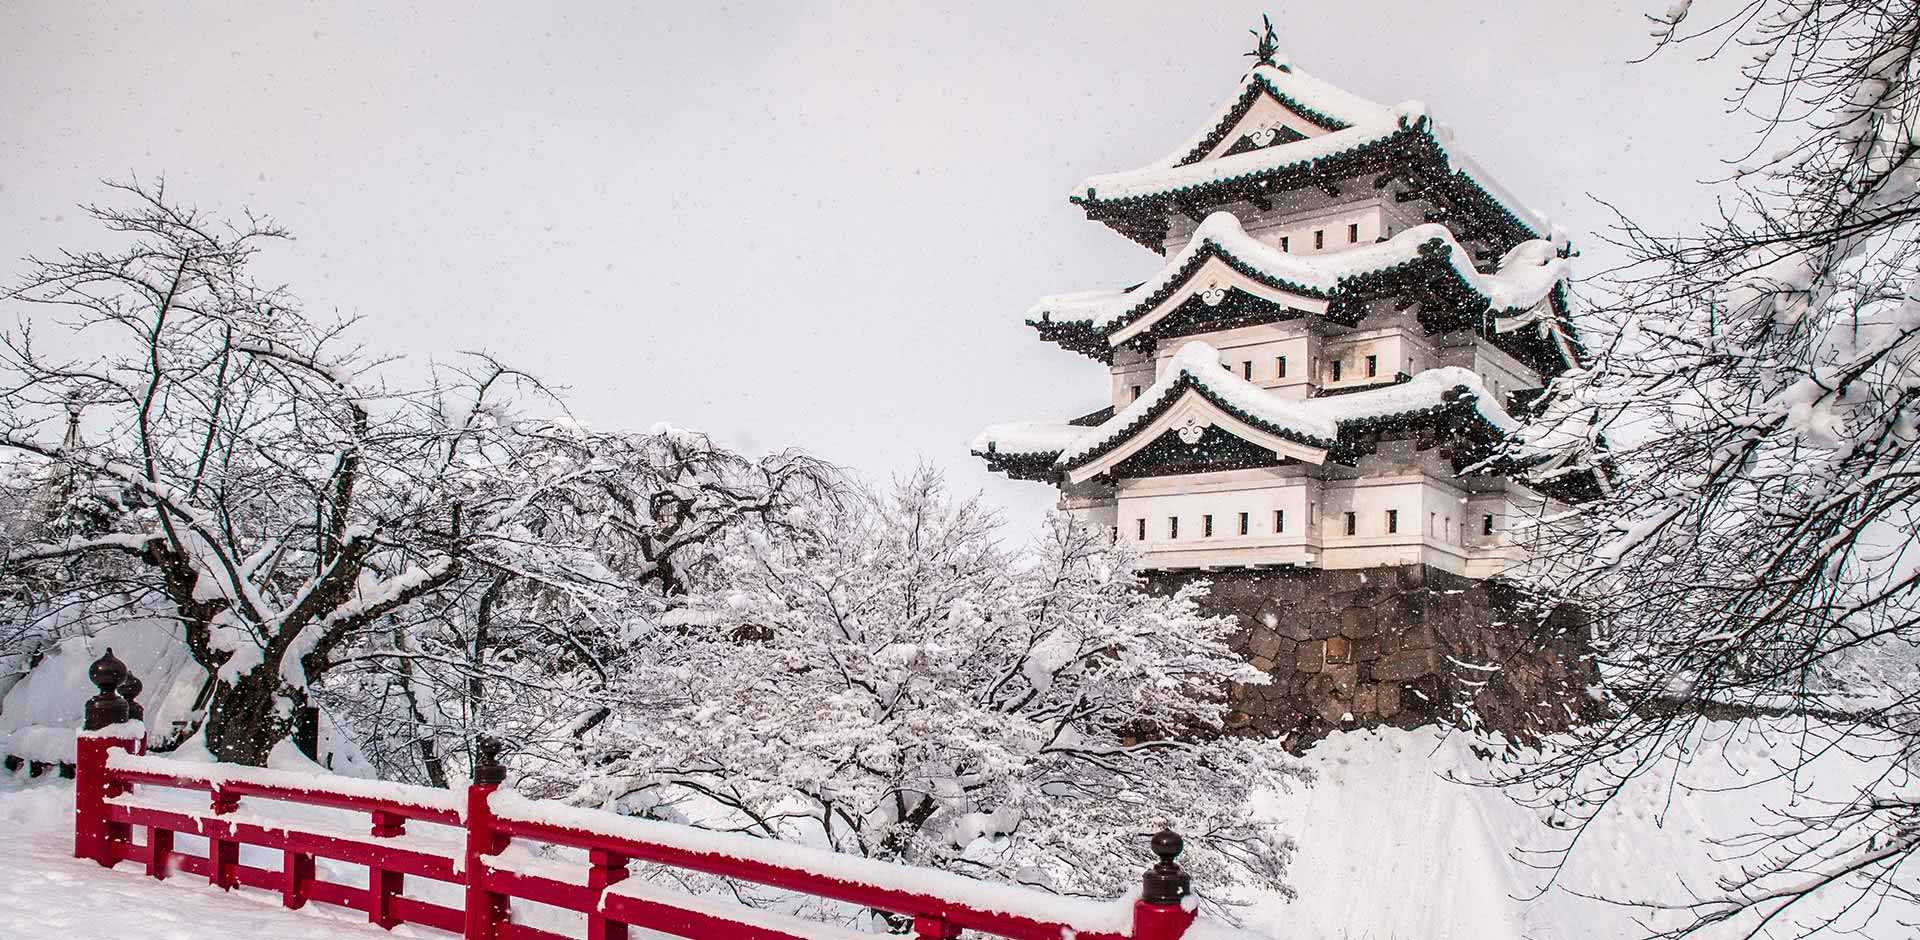 Mùa đông ở Nhật Bản Và Những Thú Vui Độc Đáo Mà Bạn Chưa Biết